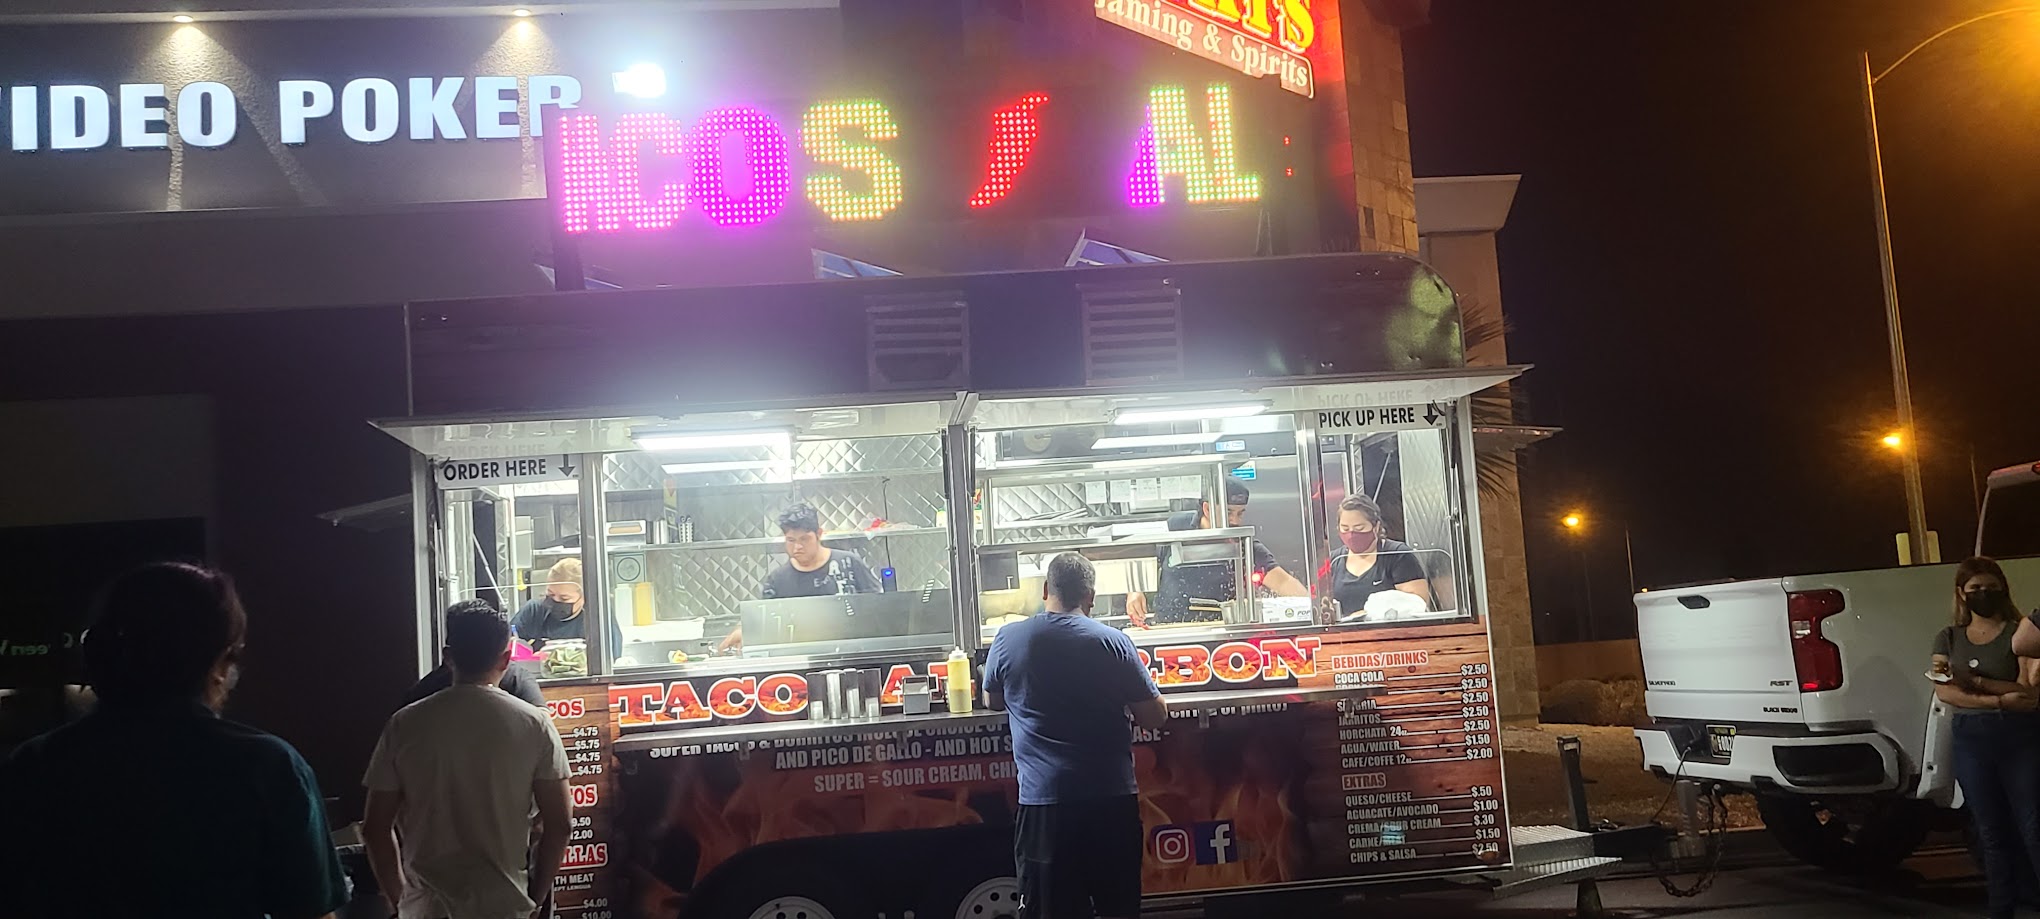 Tacos Al Carbon Mexican Food Truck